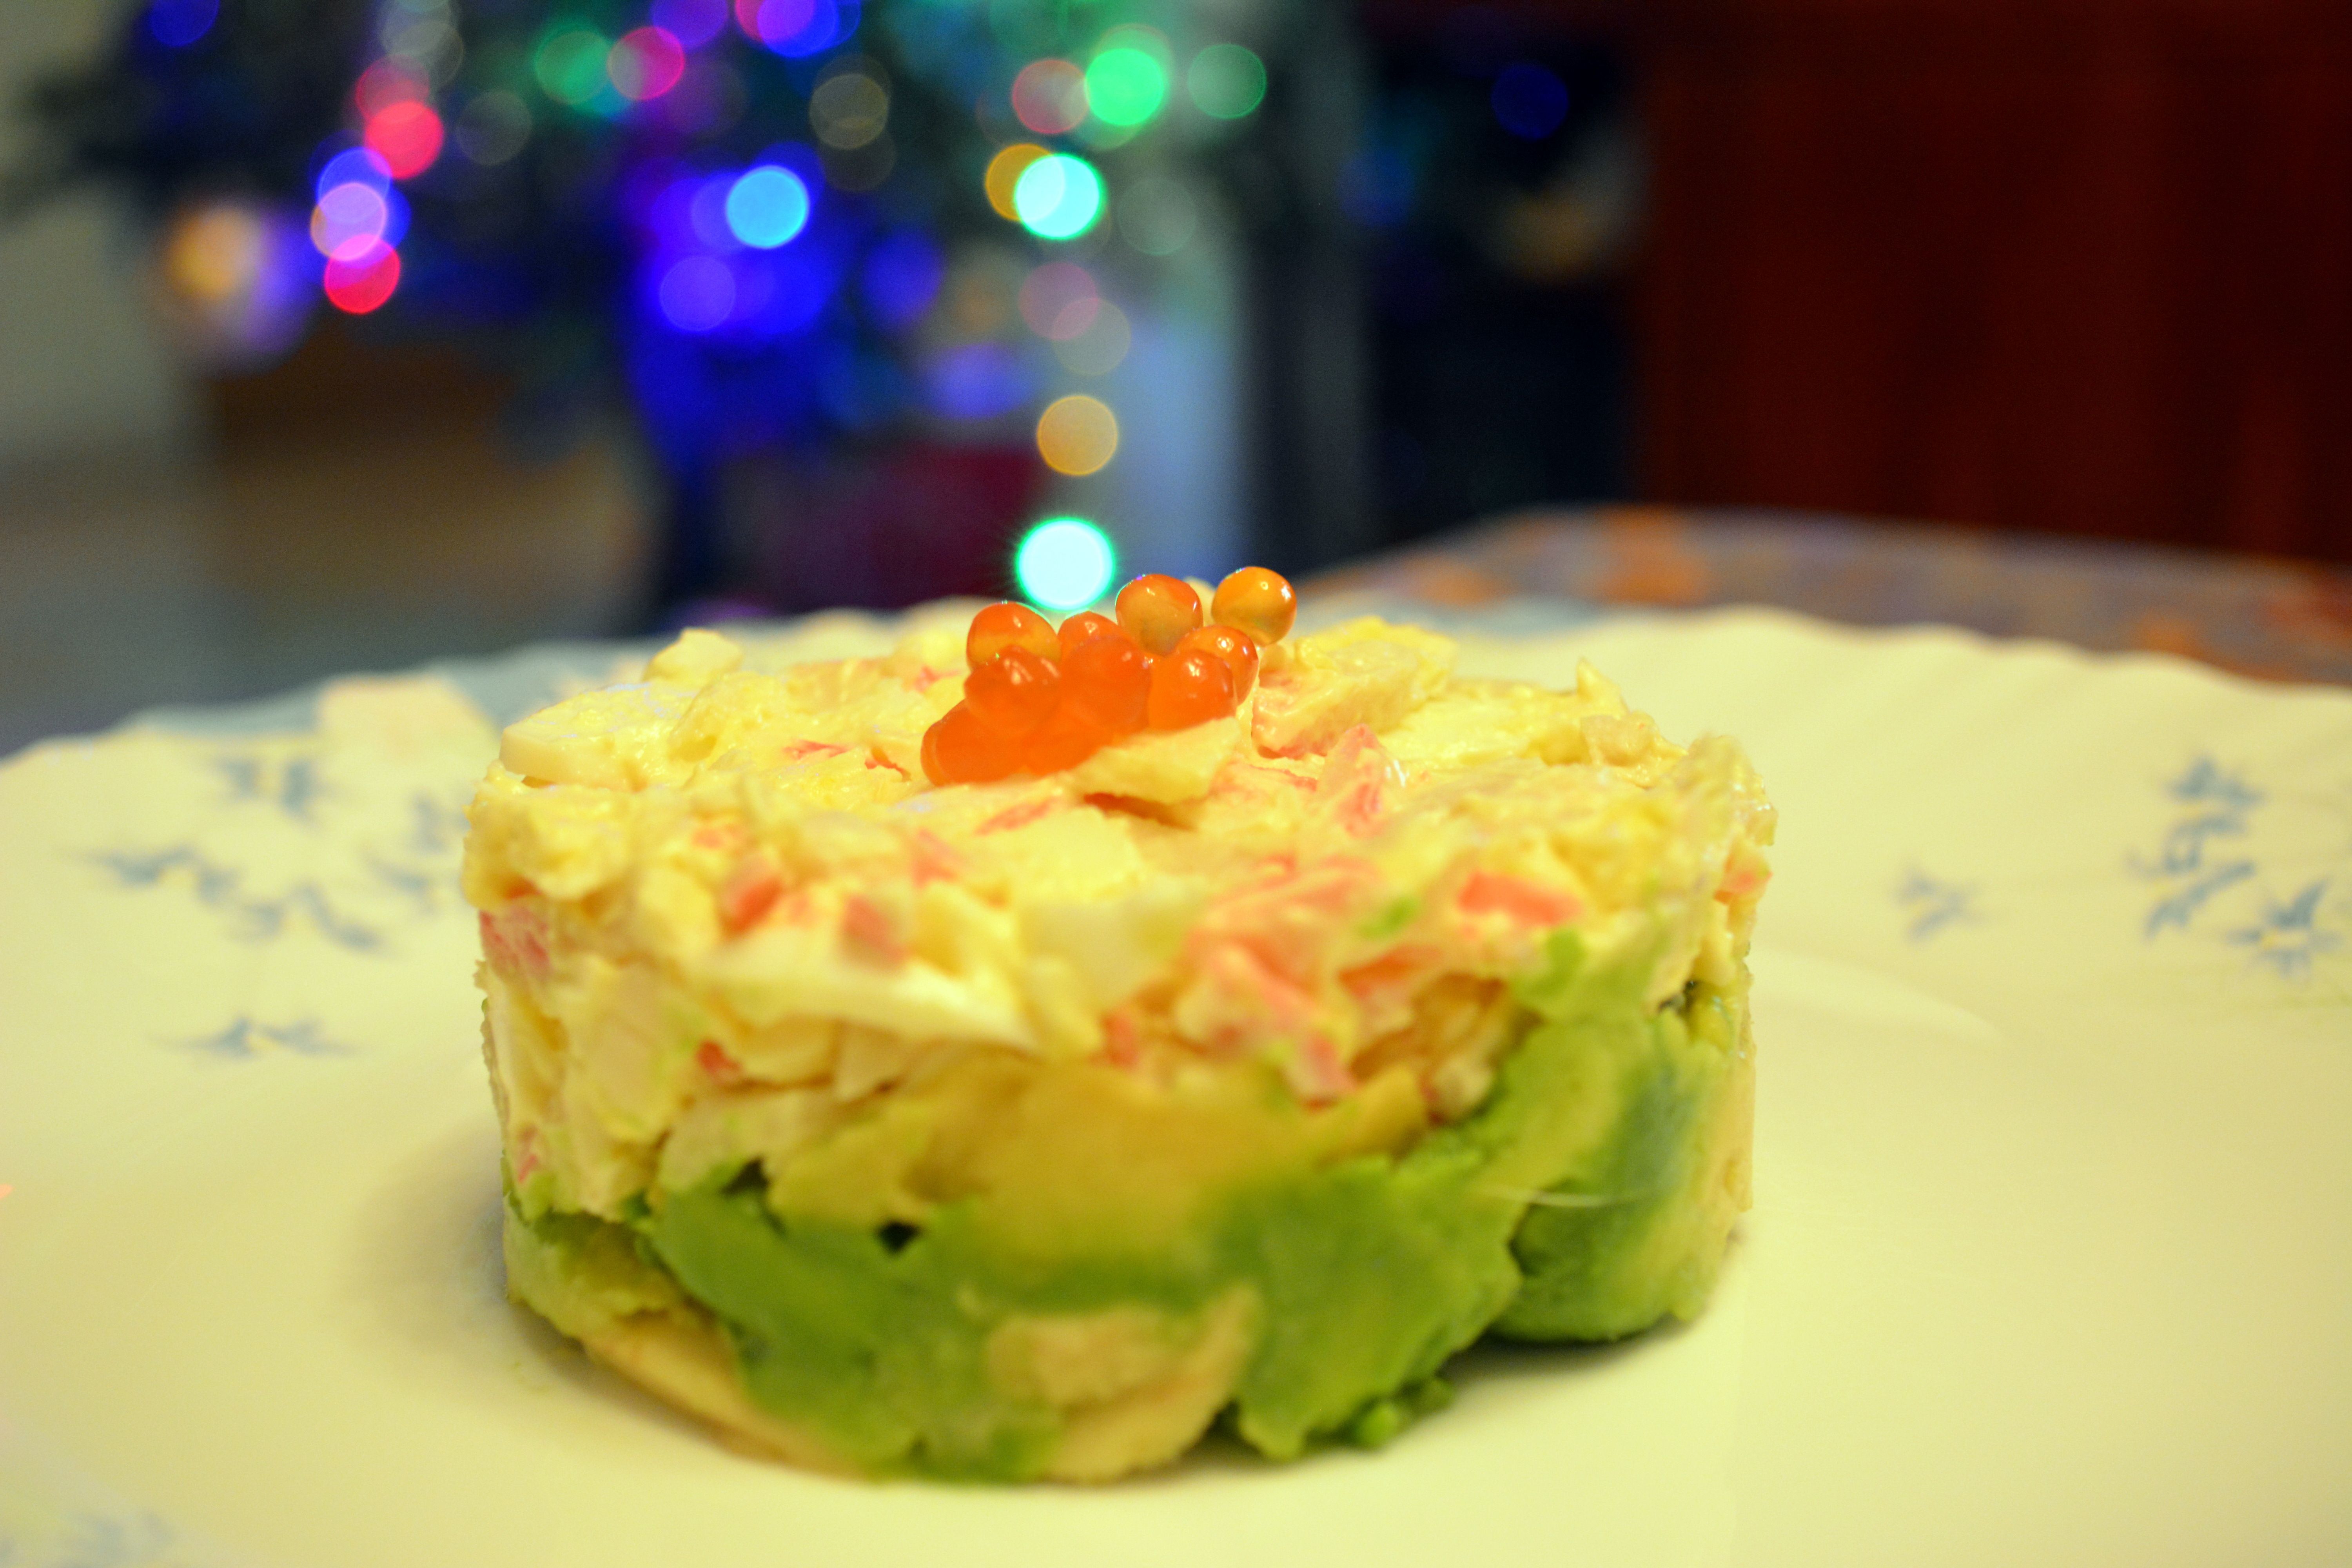 Новогодний комбинированный крабовый салат с авокадо и "соломоном"